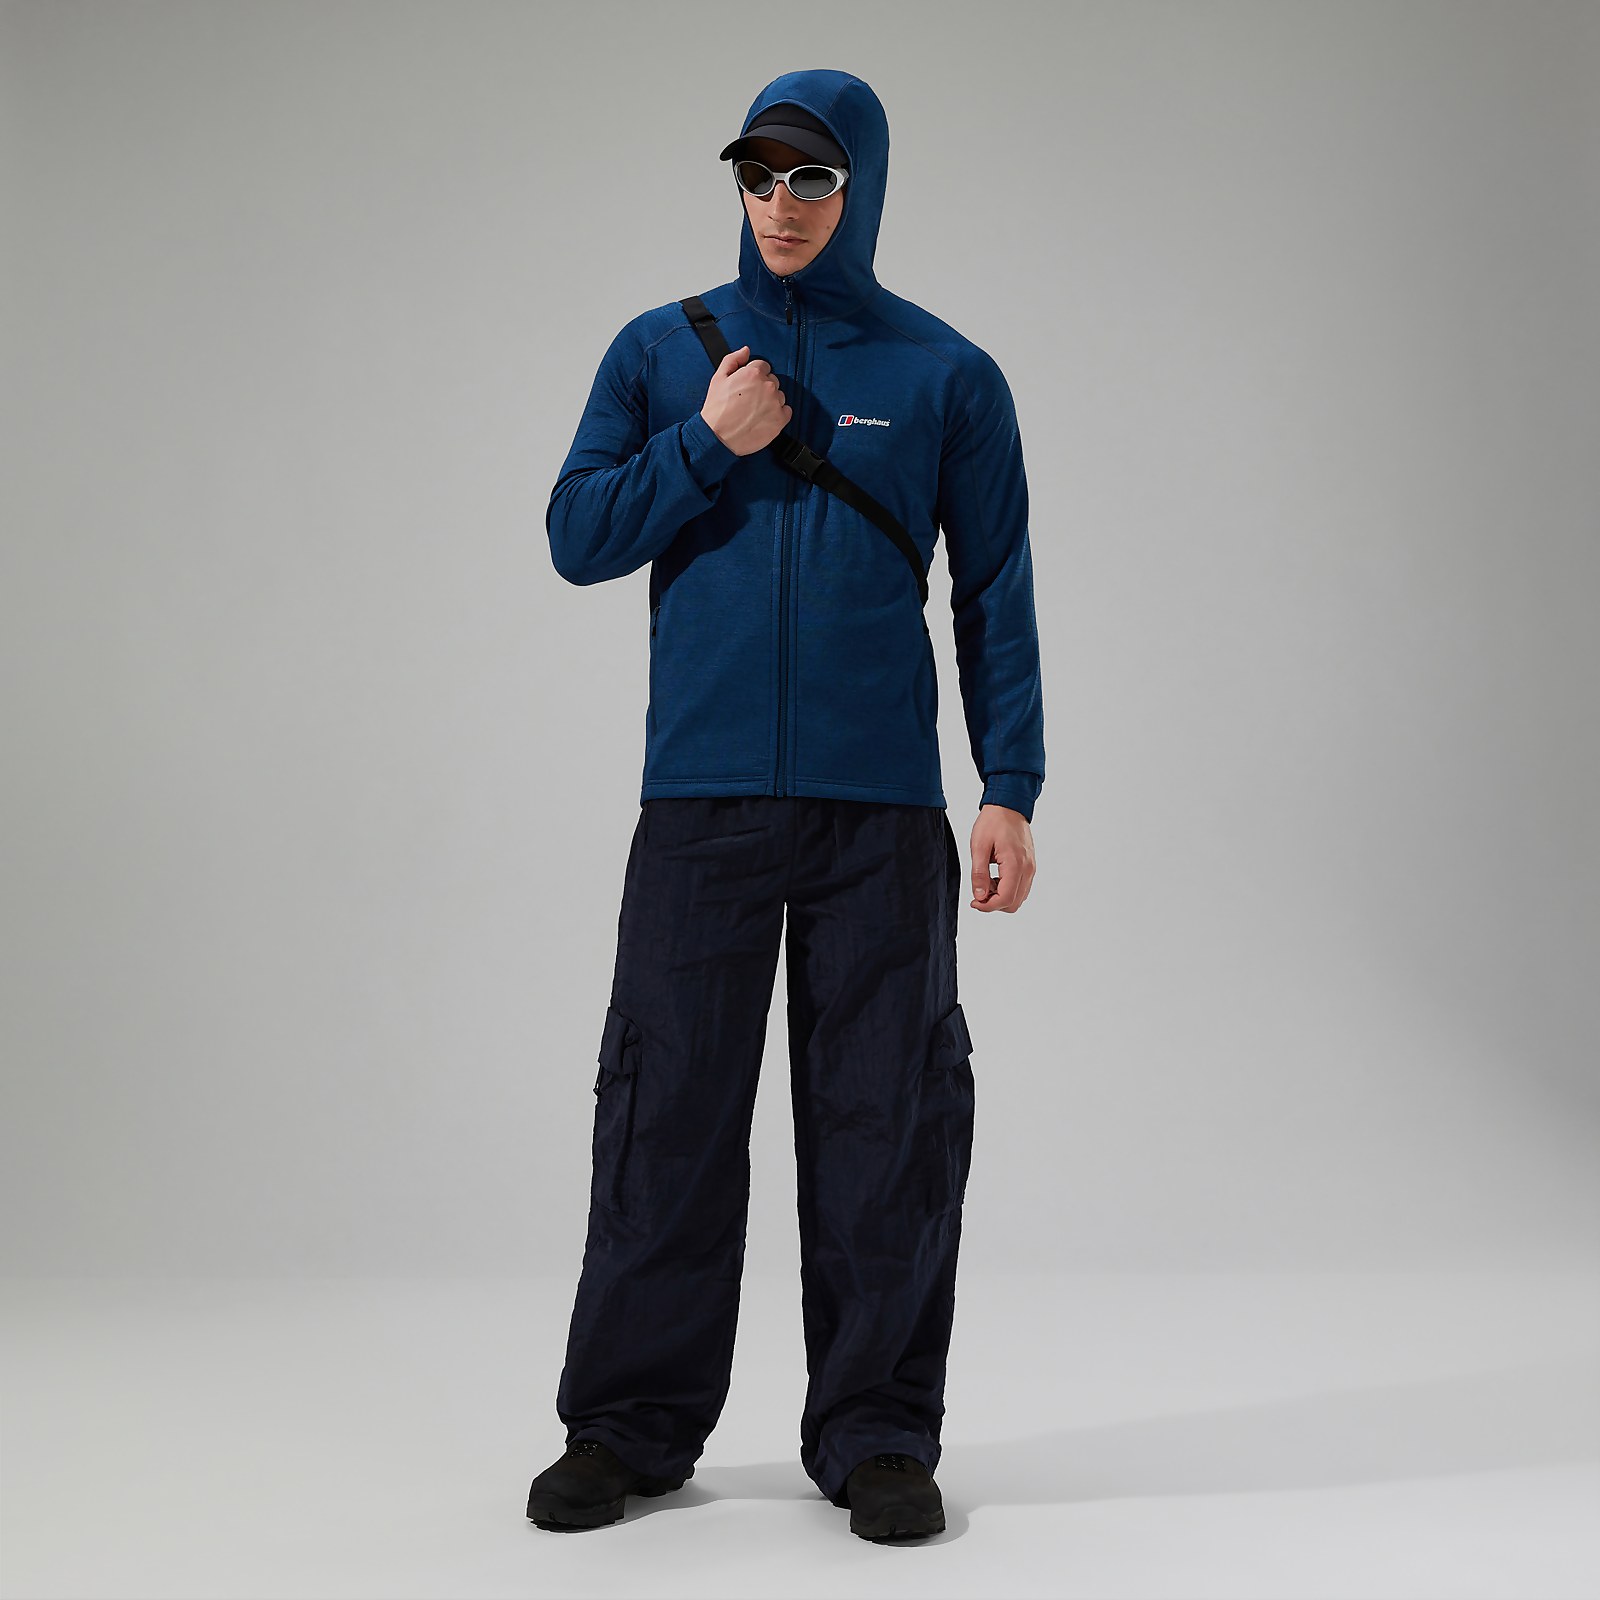 Men’s URB Spitzer InterActive Hooded Fleece Jacket - Turquoise/Blue